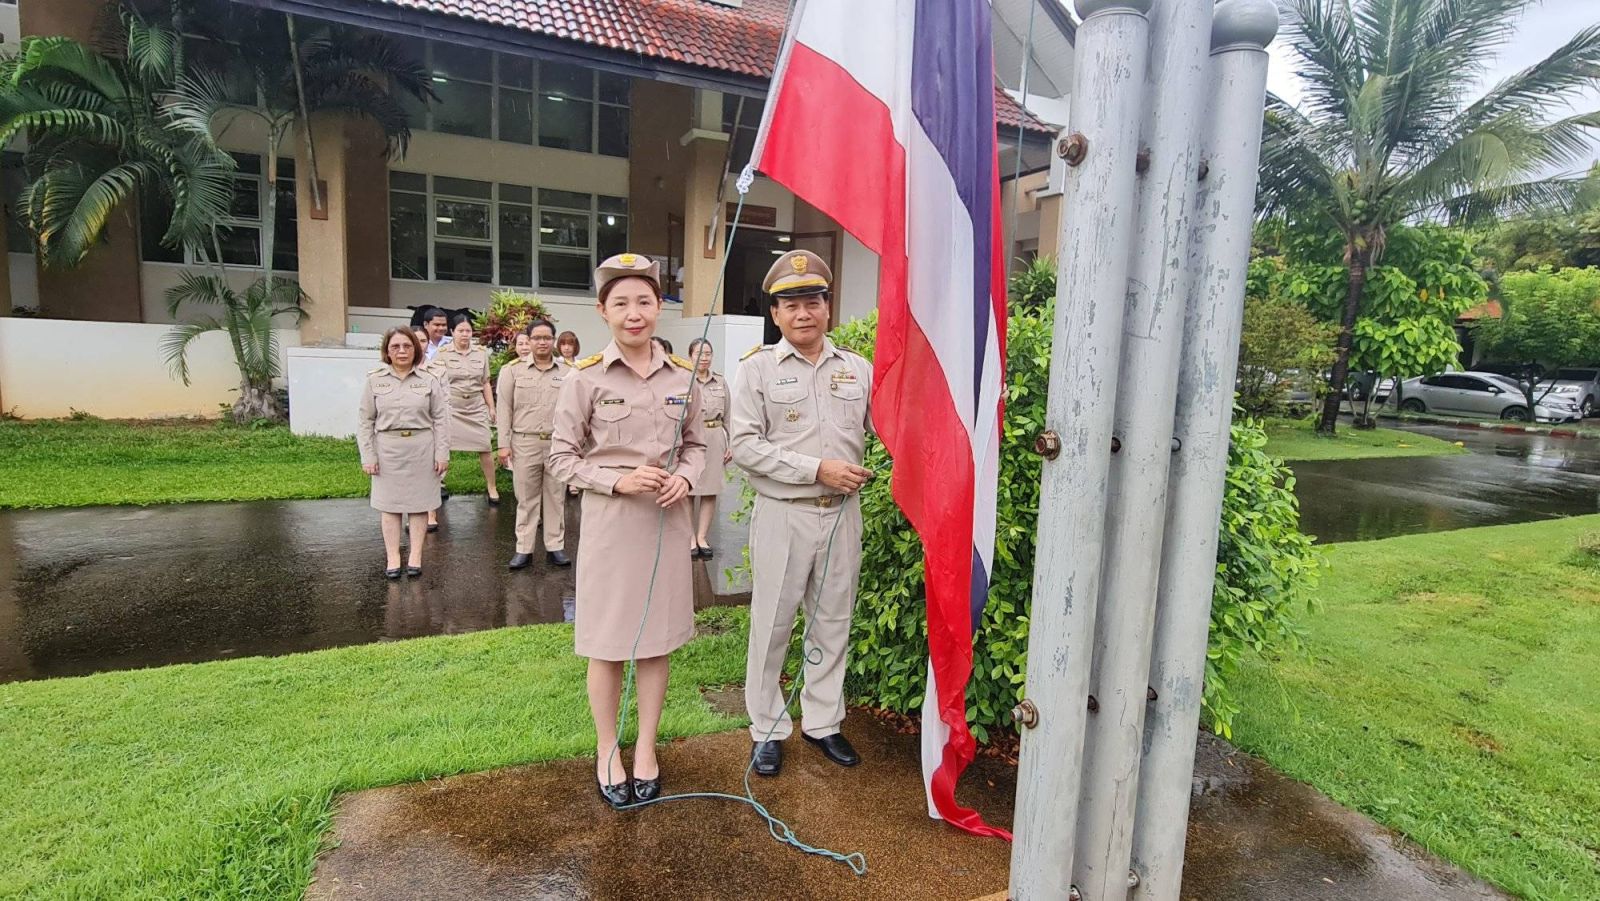 สำนักงานเศรษฐกิจการเกษตรที่ 1 จัดกิจกรรมเคารพธงชาติ และร้องเพลงชาติไทย เนื่องในวันพระราชทานธงชาติไทย ครบรอบ 106 ปี